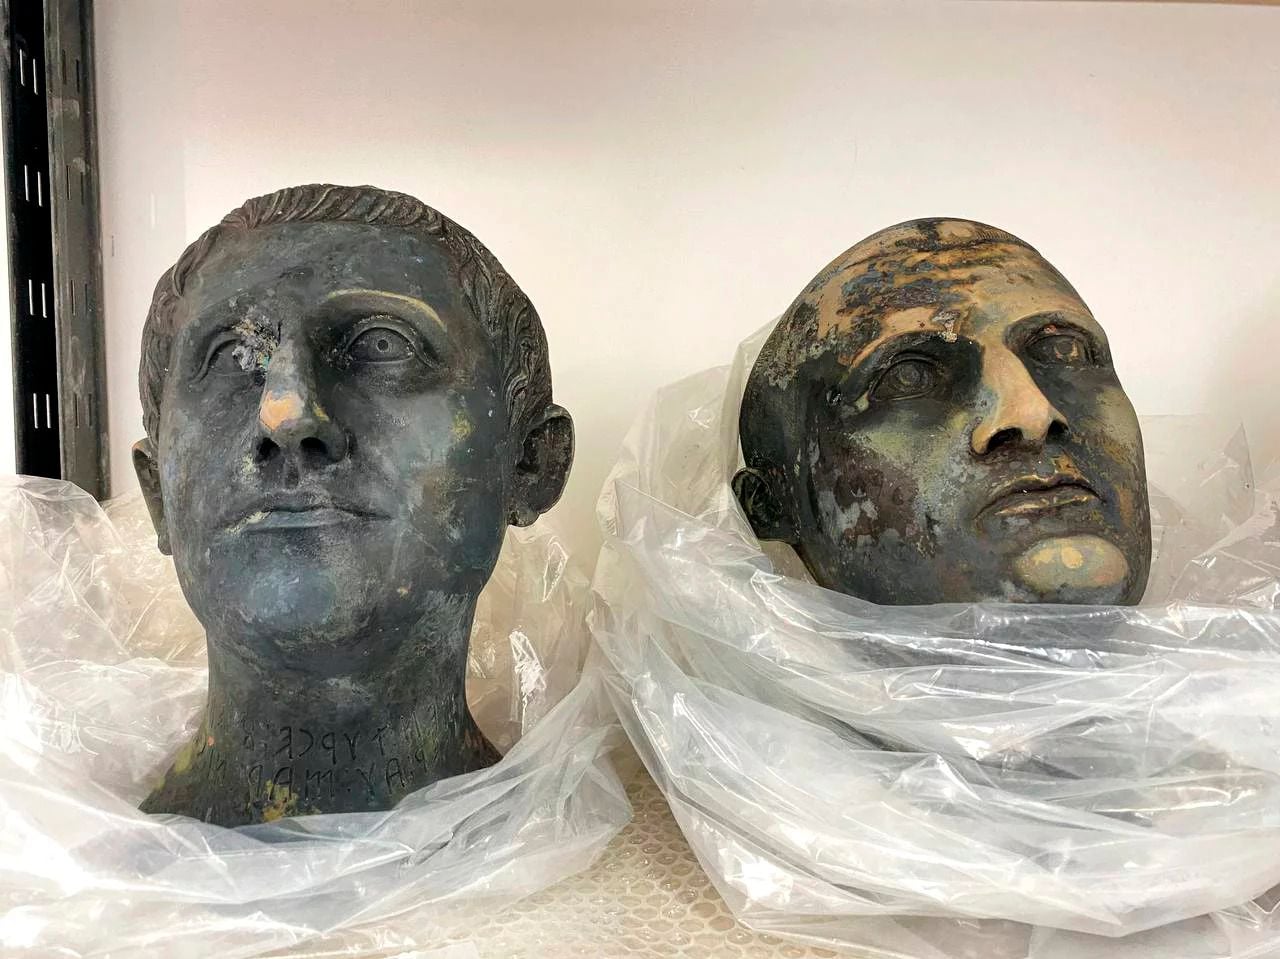 Bronze heads predating the Roman Empire discovered in Italy's San Casciano dei Bagni.